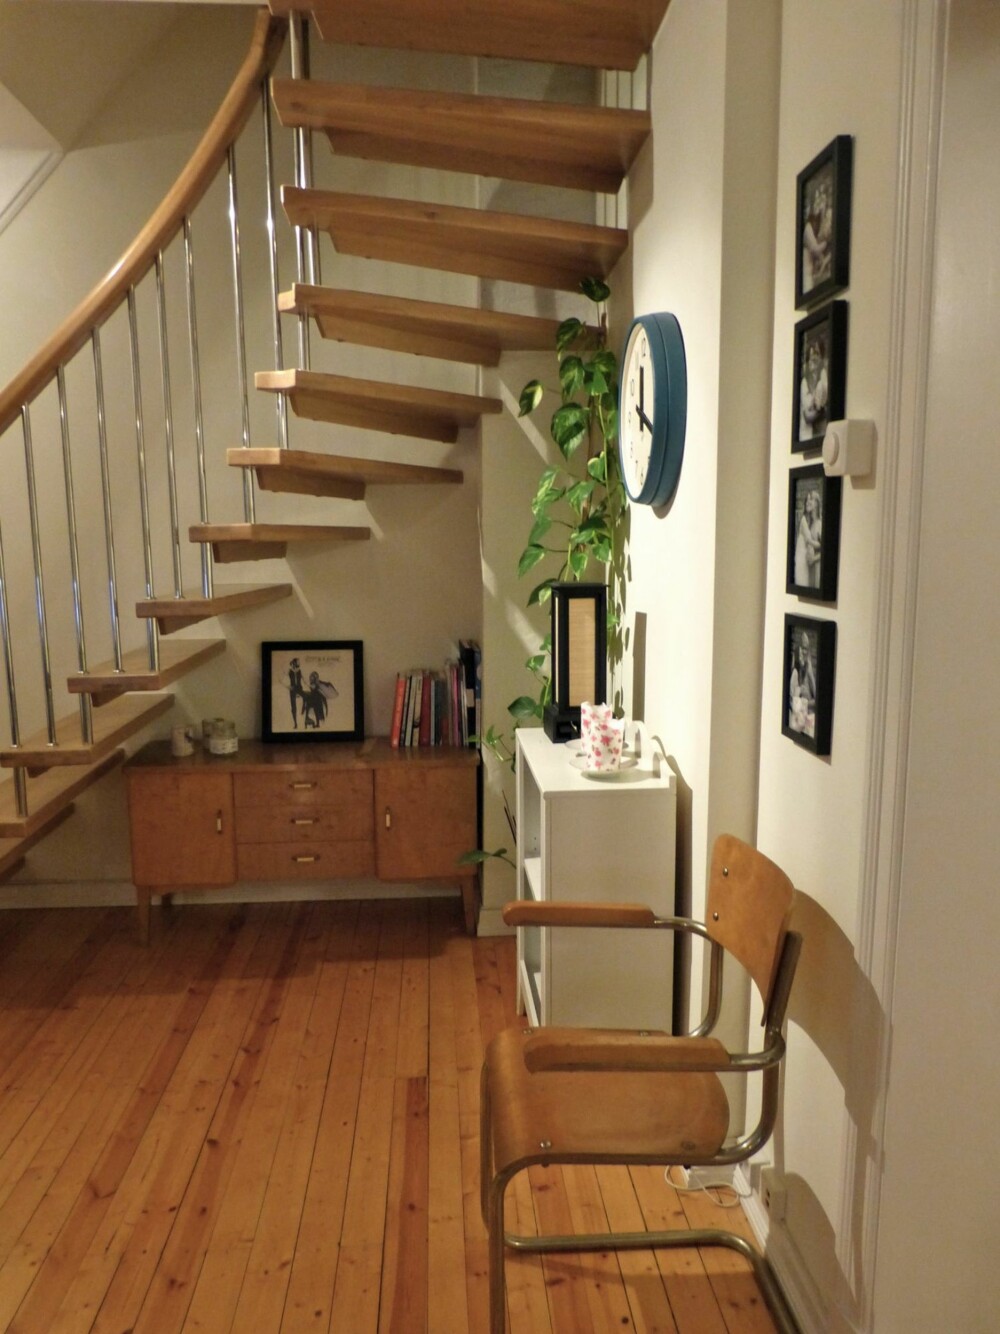 Leiligheten, som går over to plan, består av den originale leiligheten (3.etasje) og et ombygget loft (4.etasje). En luftig trapp binder de to etasjene sammen.